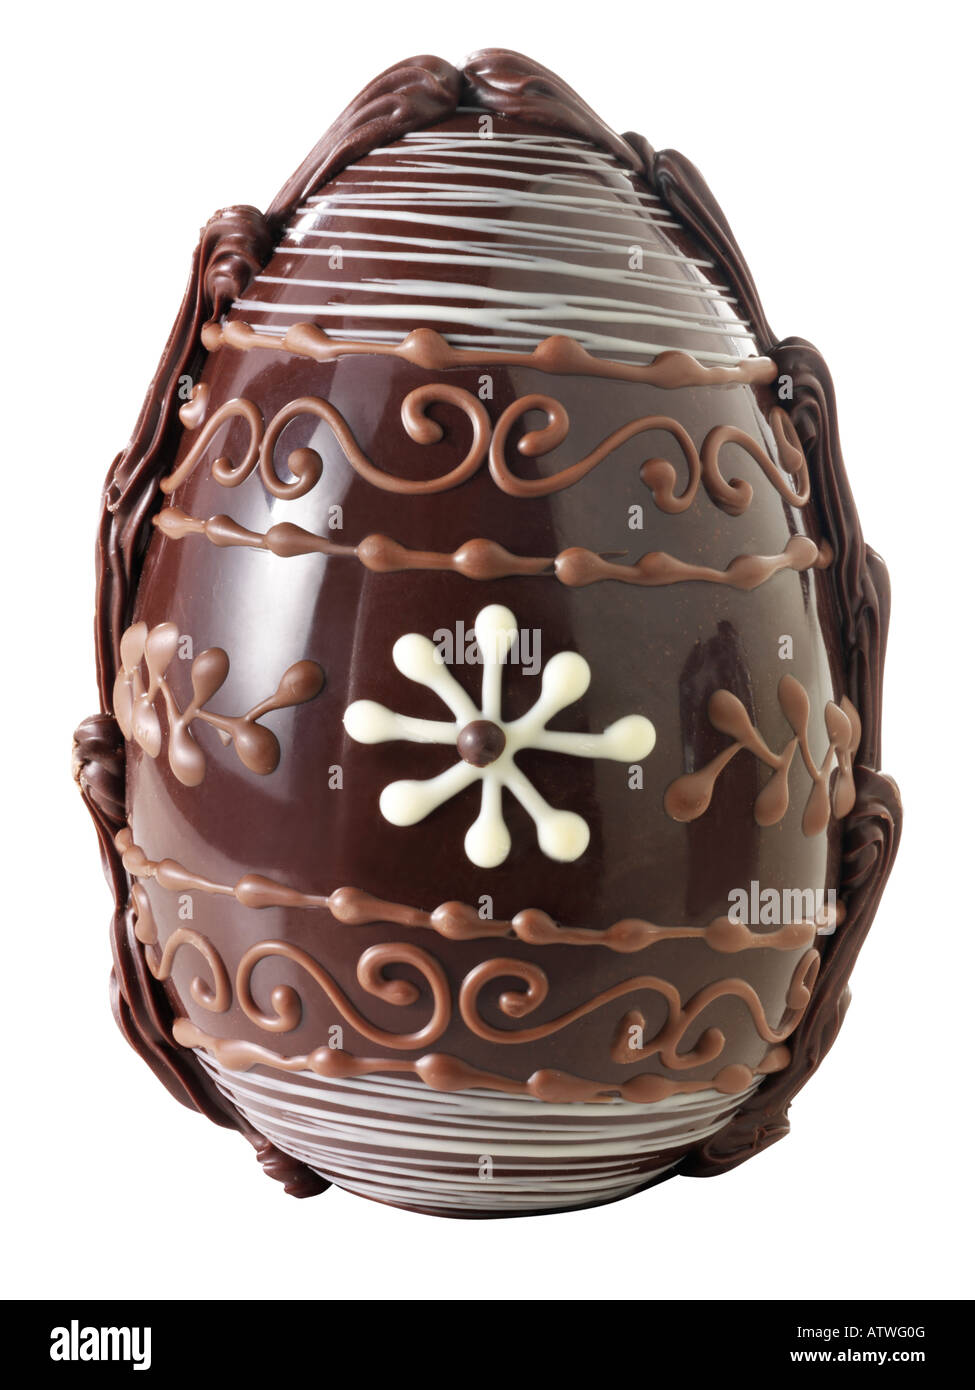 Hecho a mano tradicional decoración de huevos de Pascua de chocolate Foto de stock